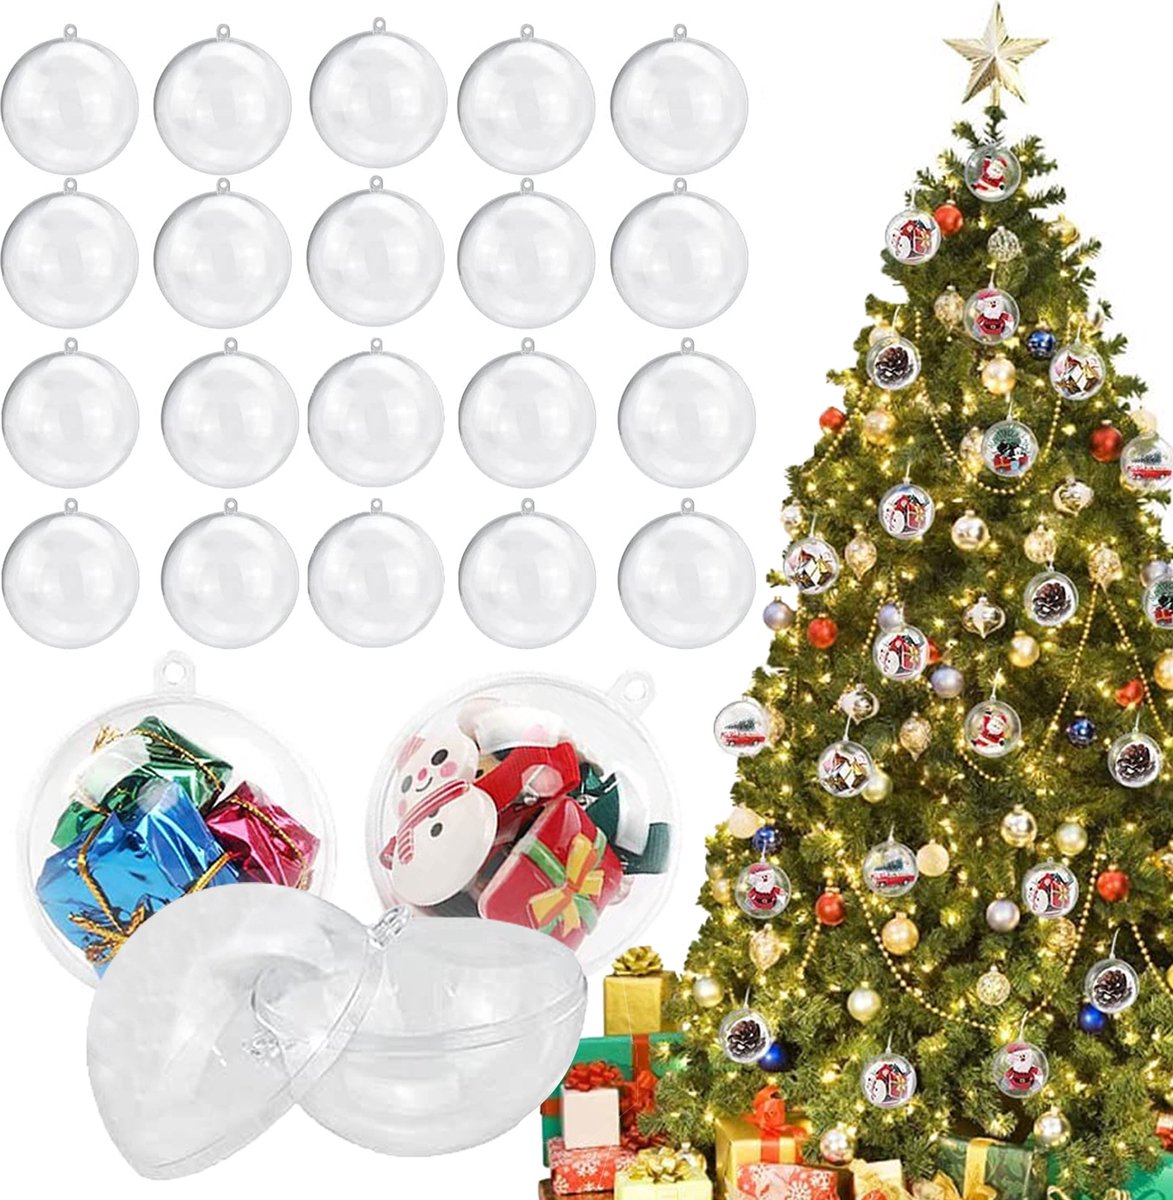 Uten - Kerstballen Plastic - kerstboom versiering - Christmas Gifts - kerstballenset - 20 stuks - kerstboom ballen - Ø8cm - wit